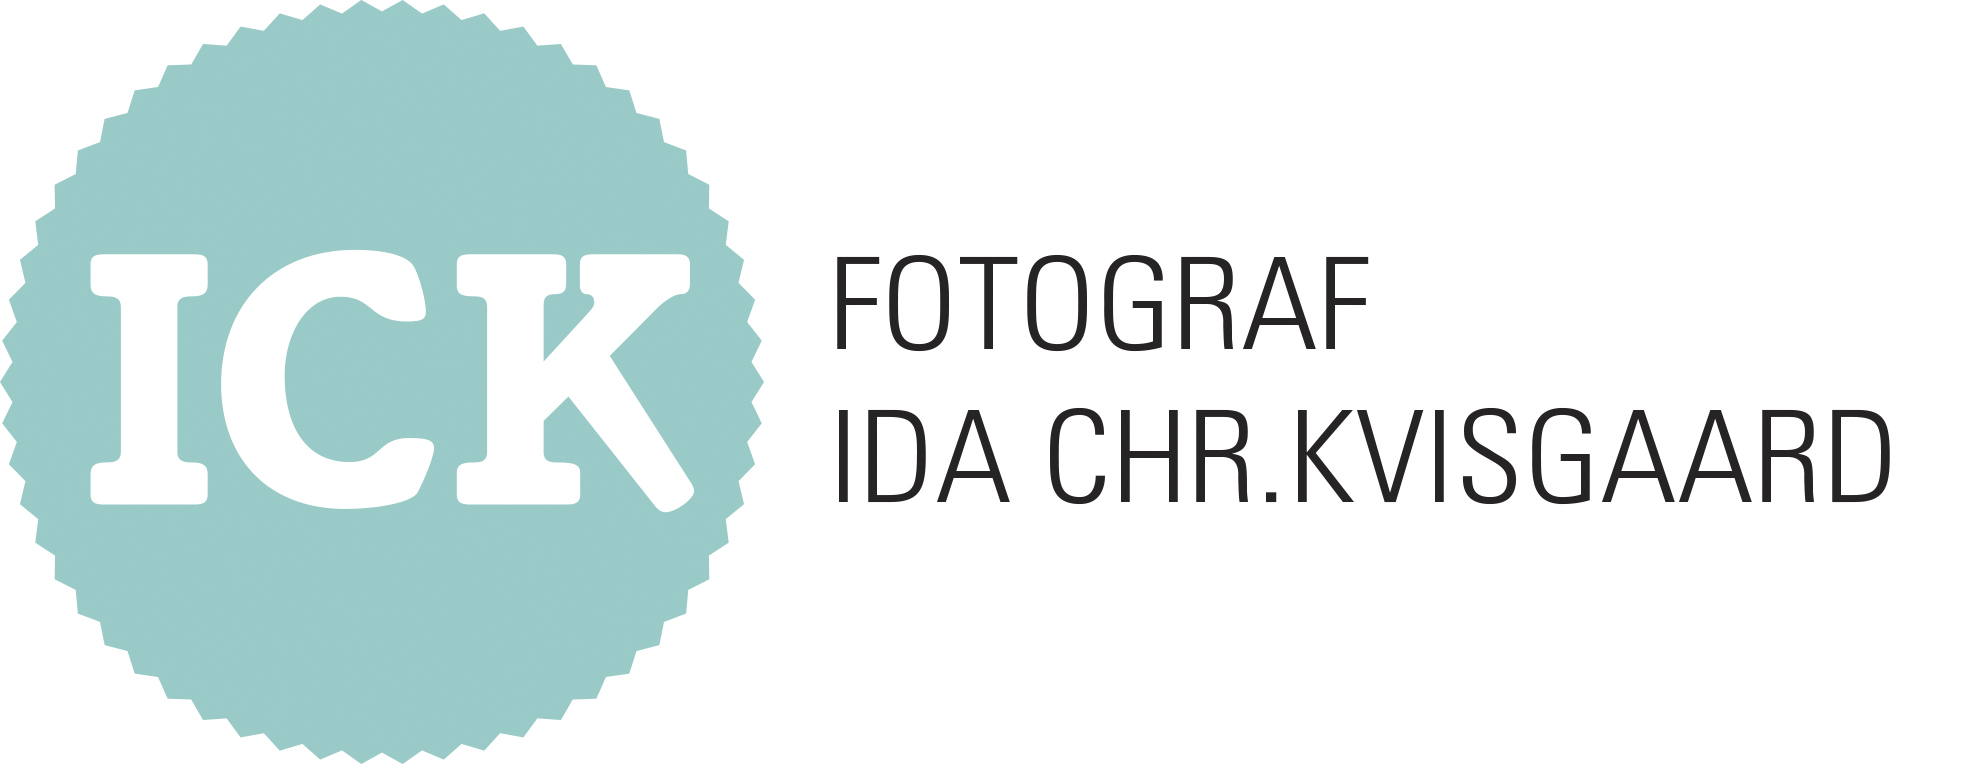 Fotograf Ida Chr. Kvisgaard